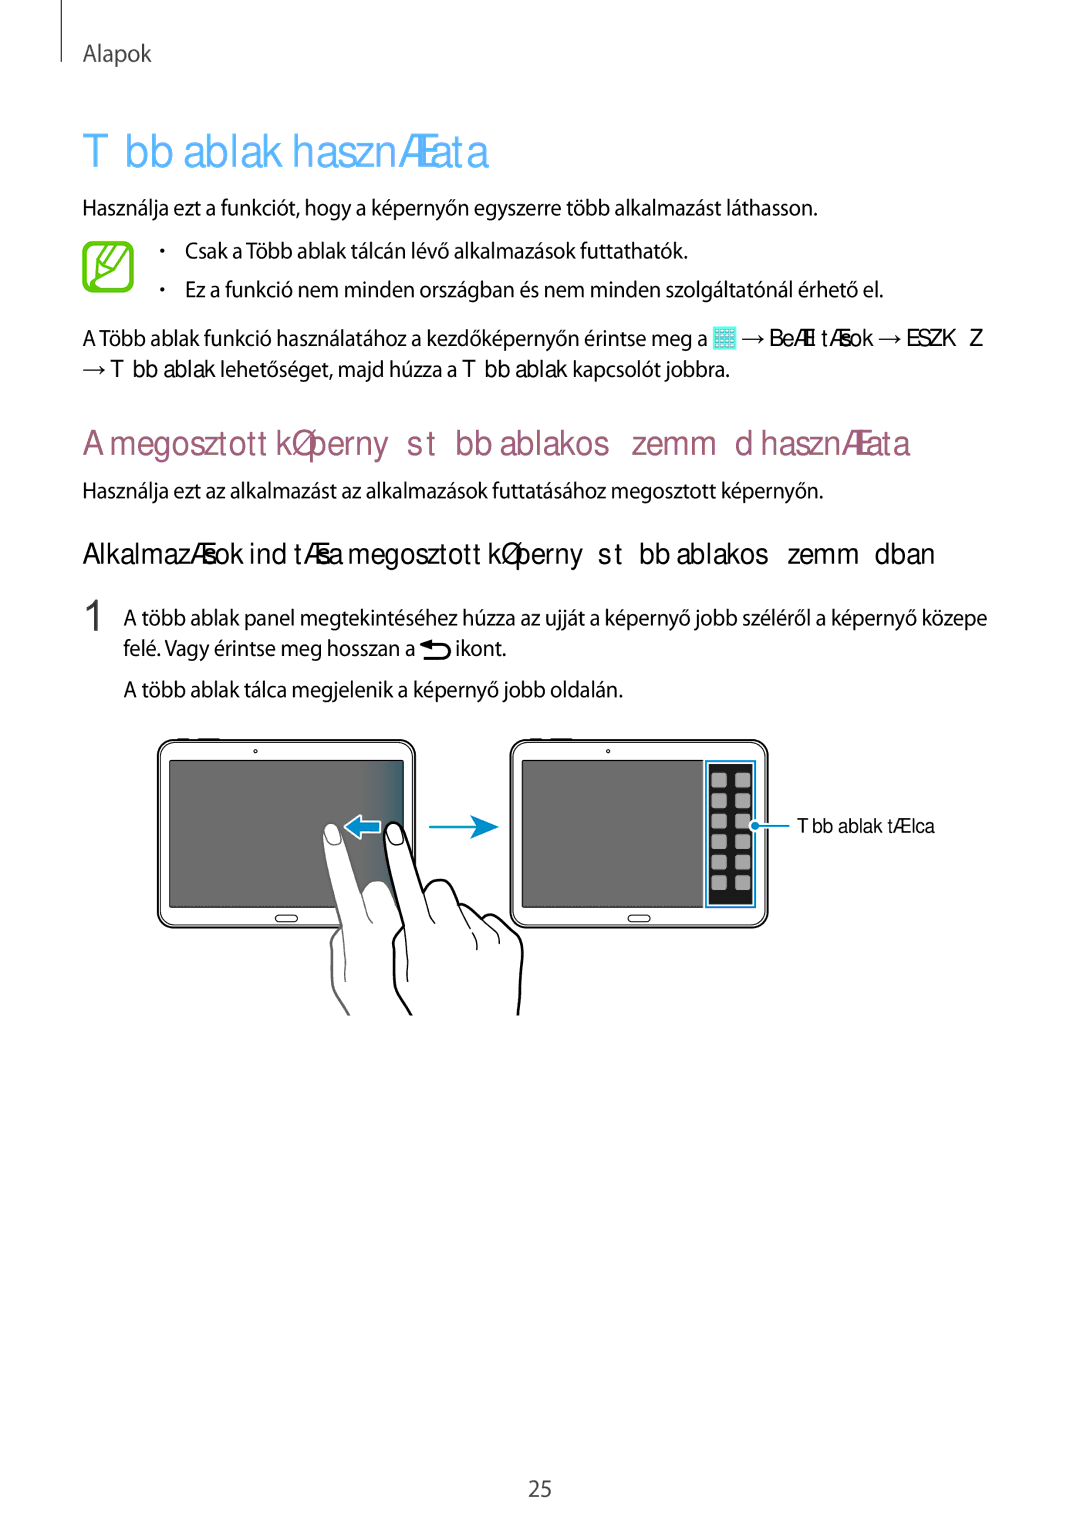 Samsung SM-T535NYKAEUR, SM-T535NYKAATO manual Több ablak használata, Megosztott képernyős több ablakos üzemmód használata 